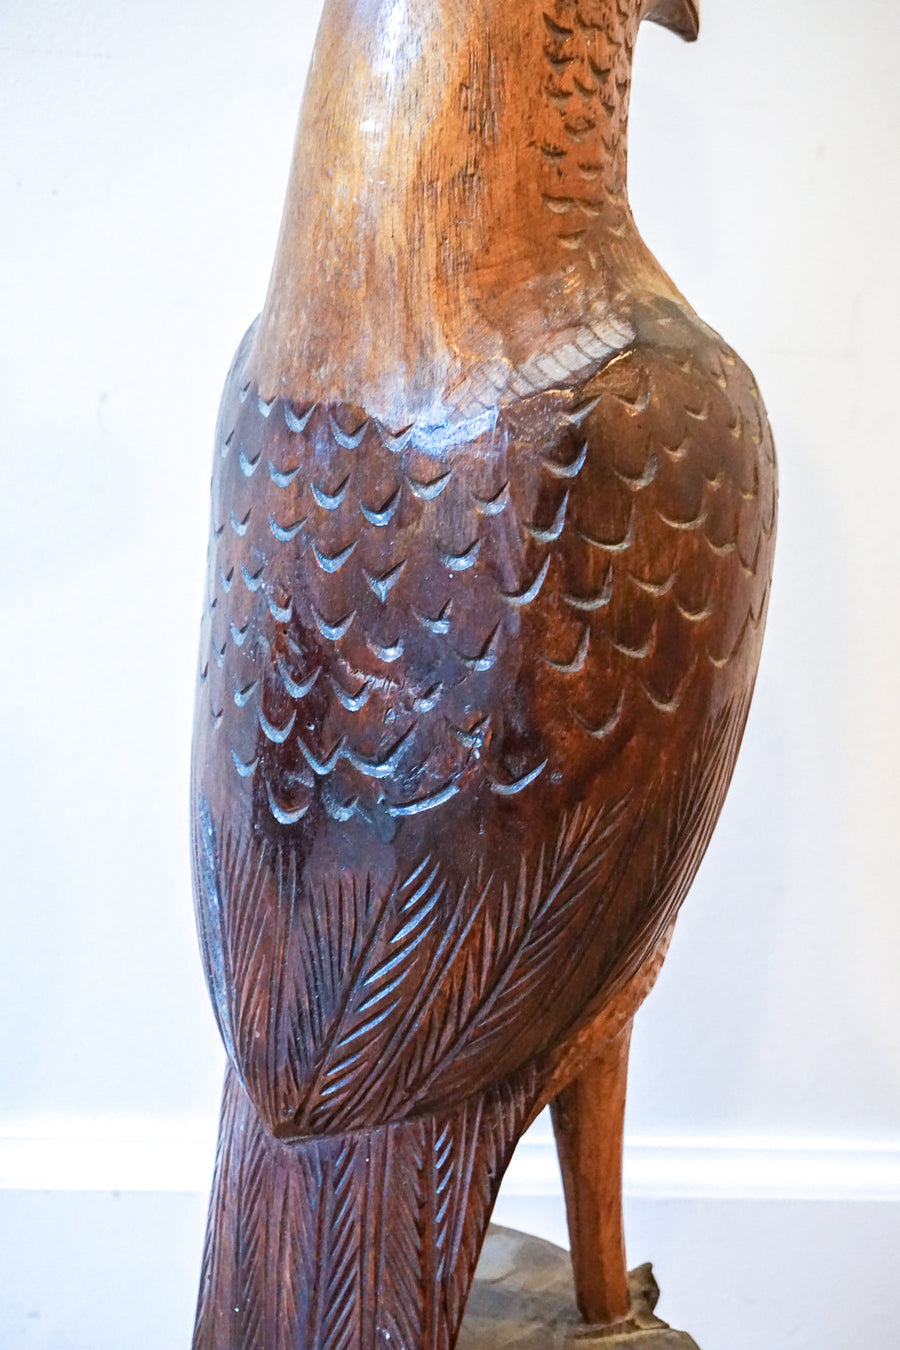 Vintage Hand Carved Solid Wood Eagle